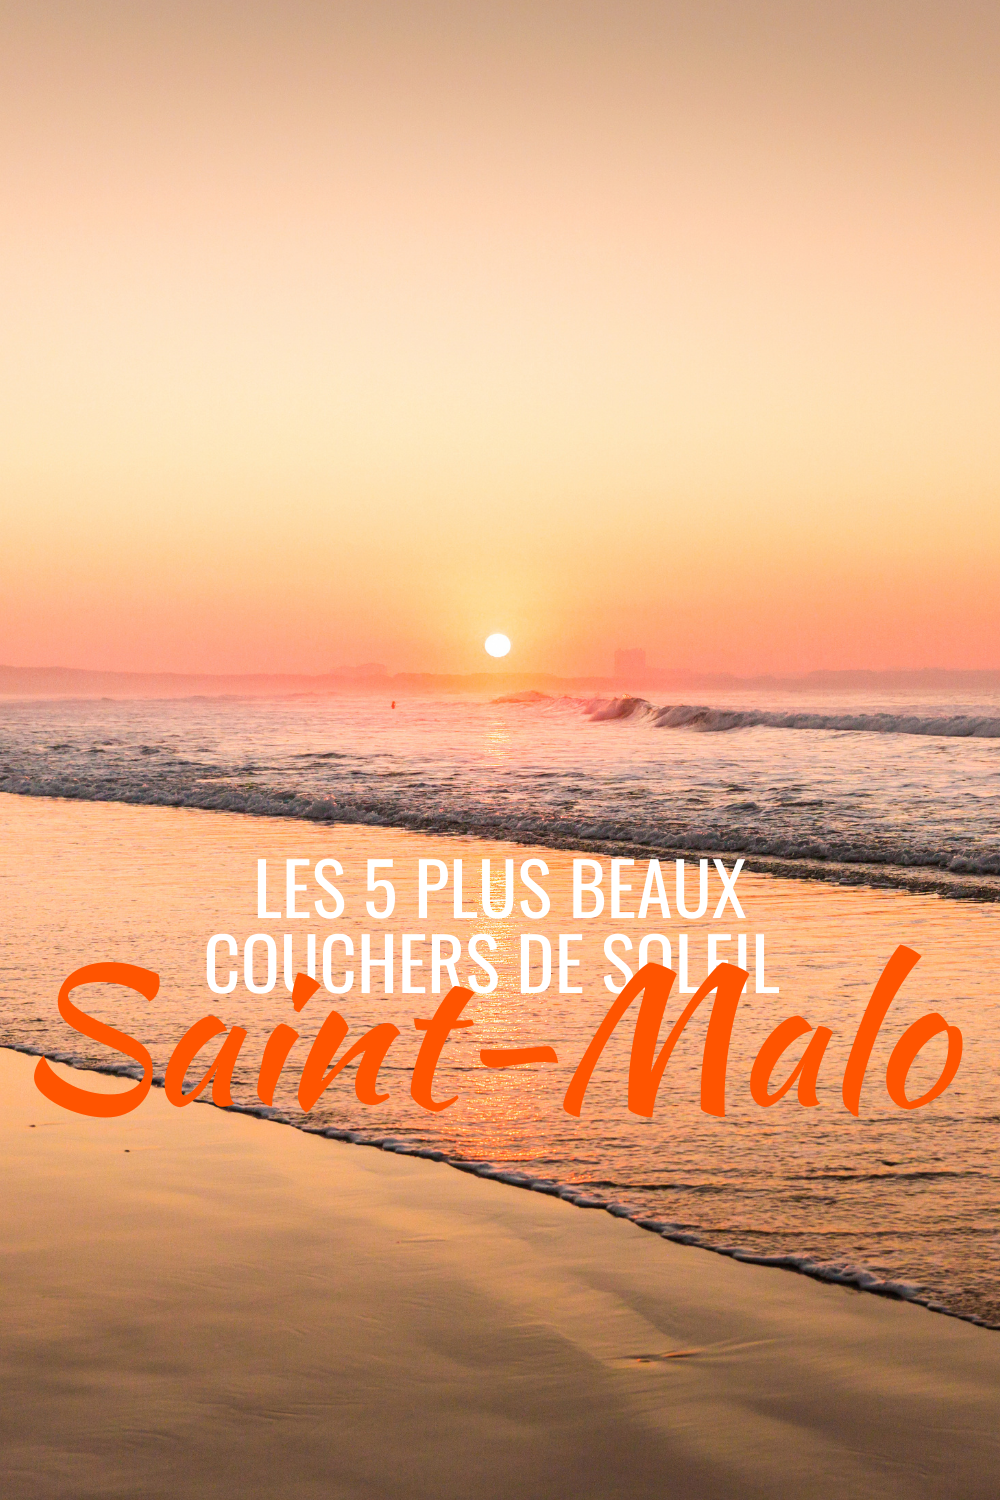 Les 5 plus beaux couchers de soleil Saint-Malo